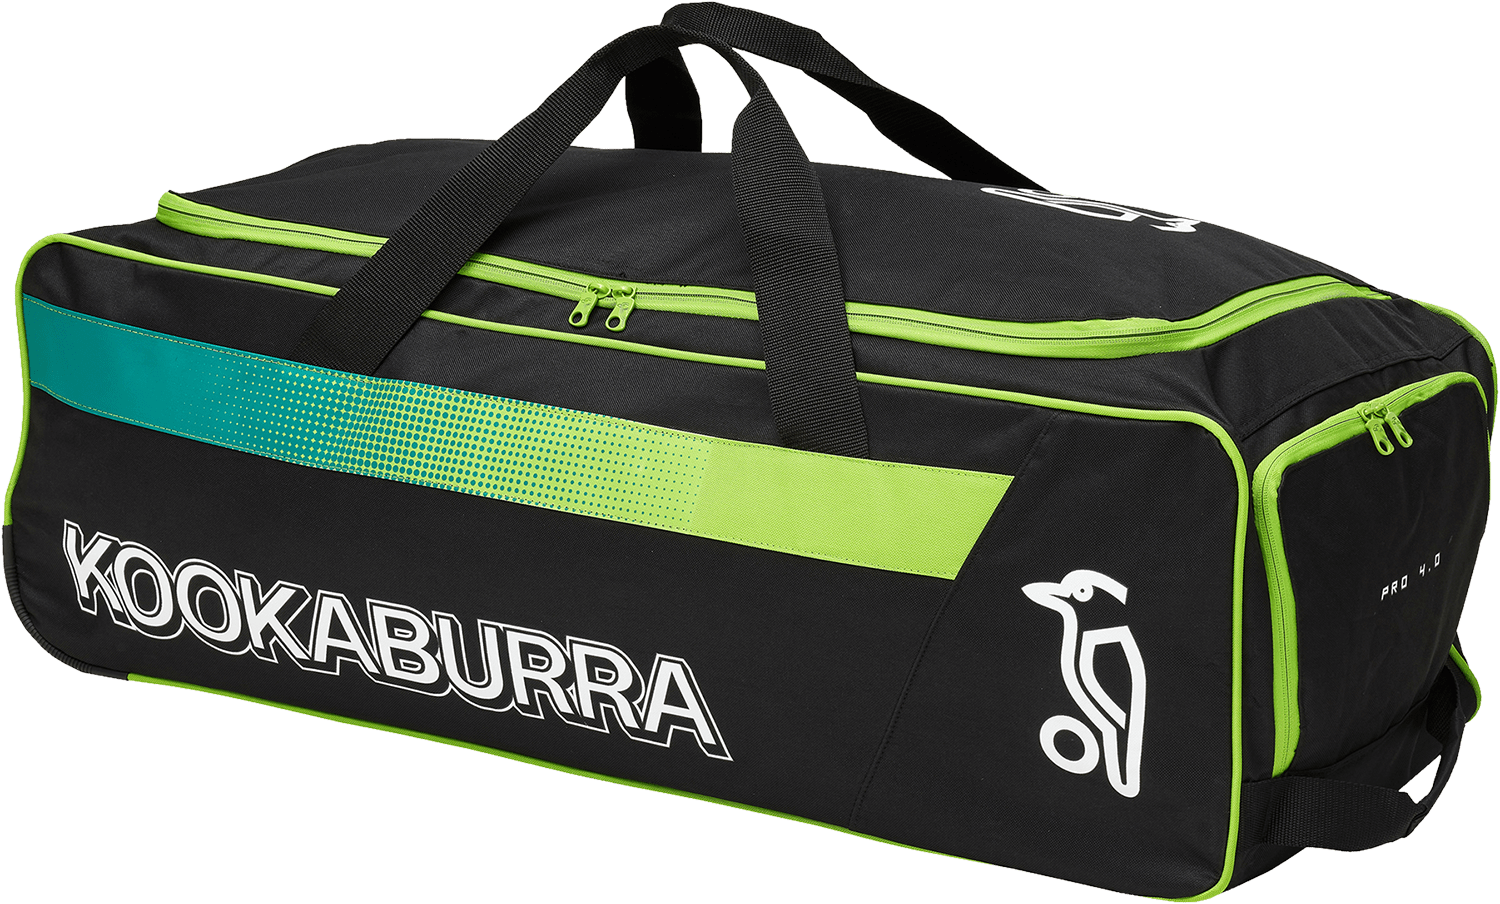 Kookaburra Cricket Bags Lime Kookaburra 4.0 Wheelie Cricket Bag